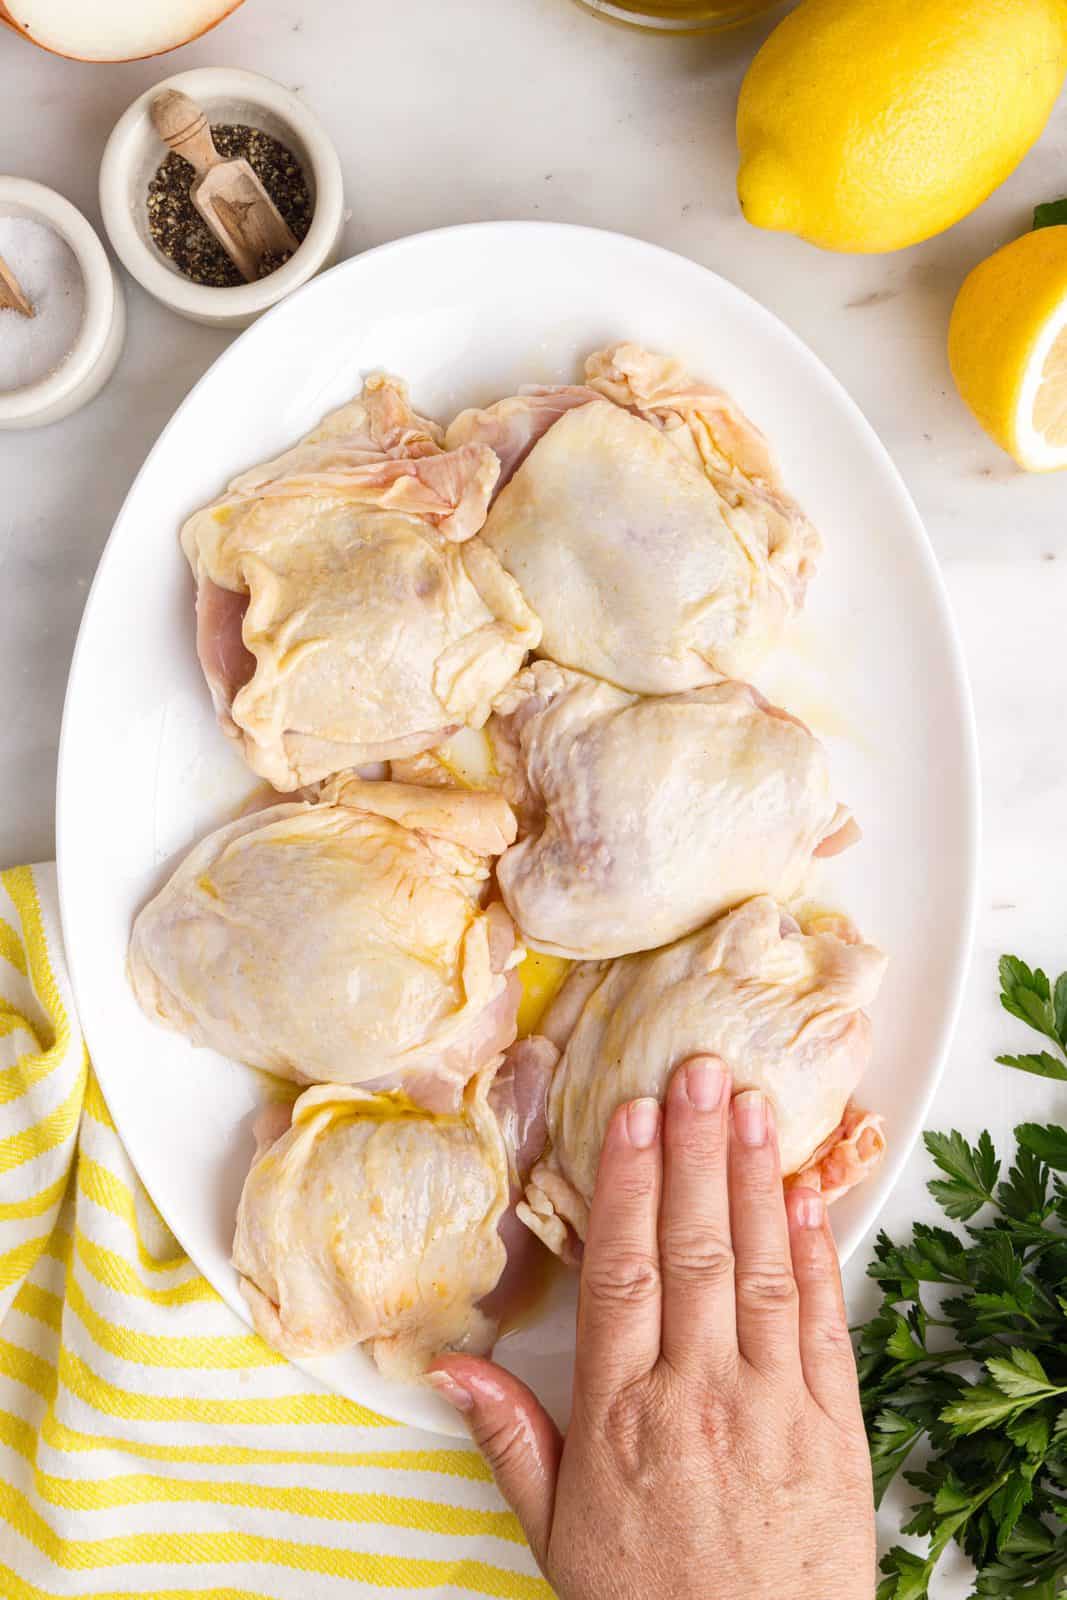 Strofinare a mano la miscela di olio e limone sulle cosce di pollo.